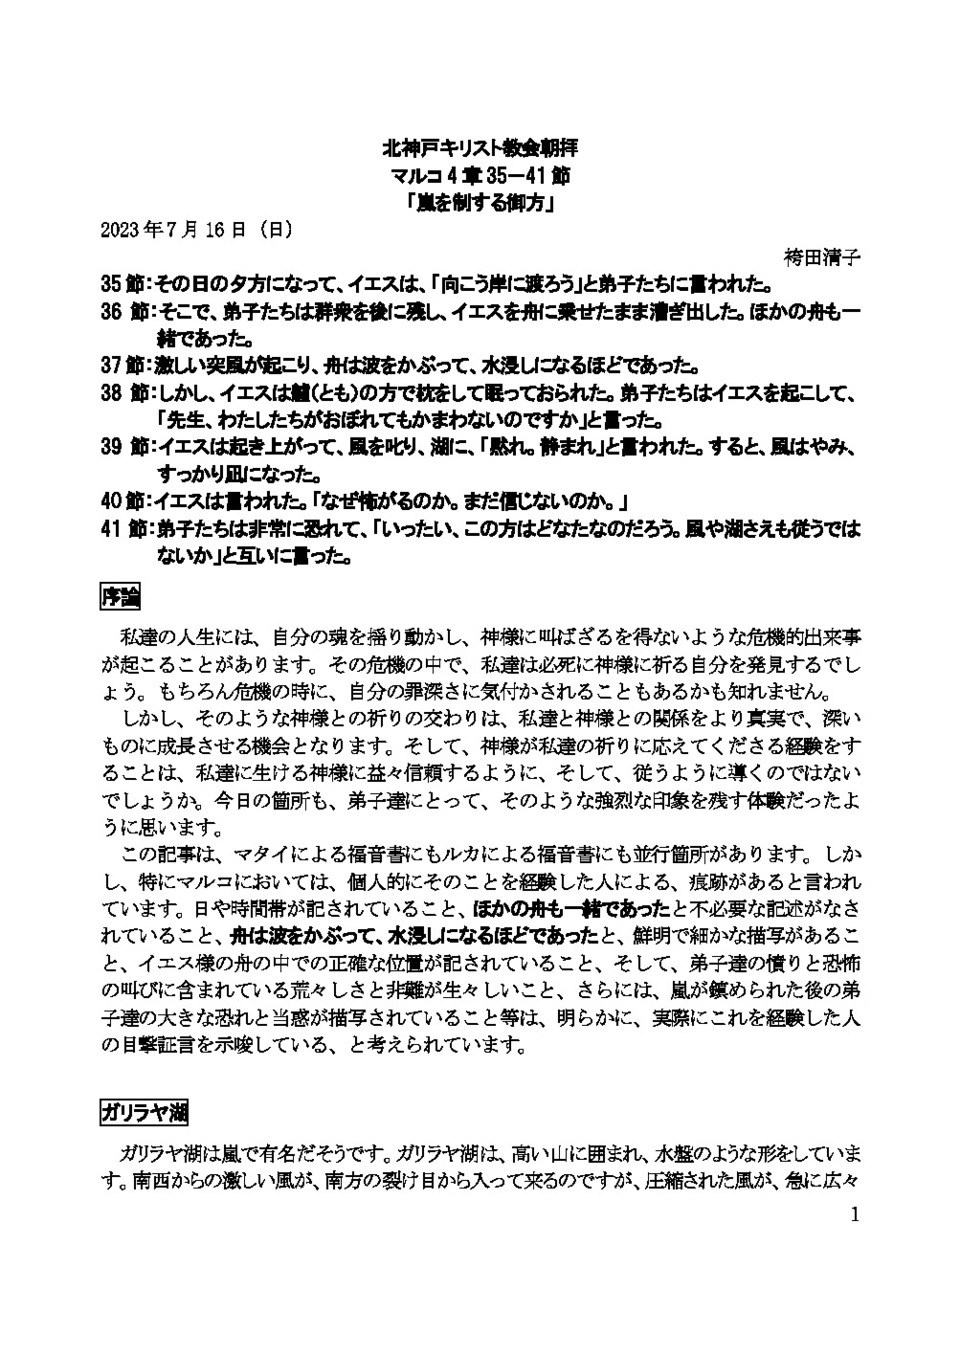 7月16日の礼拝で奉仕くださった袴田清子信徒説教者の説教原稿をアップします。